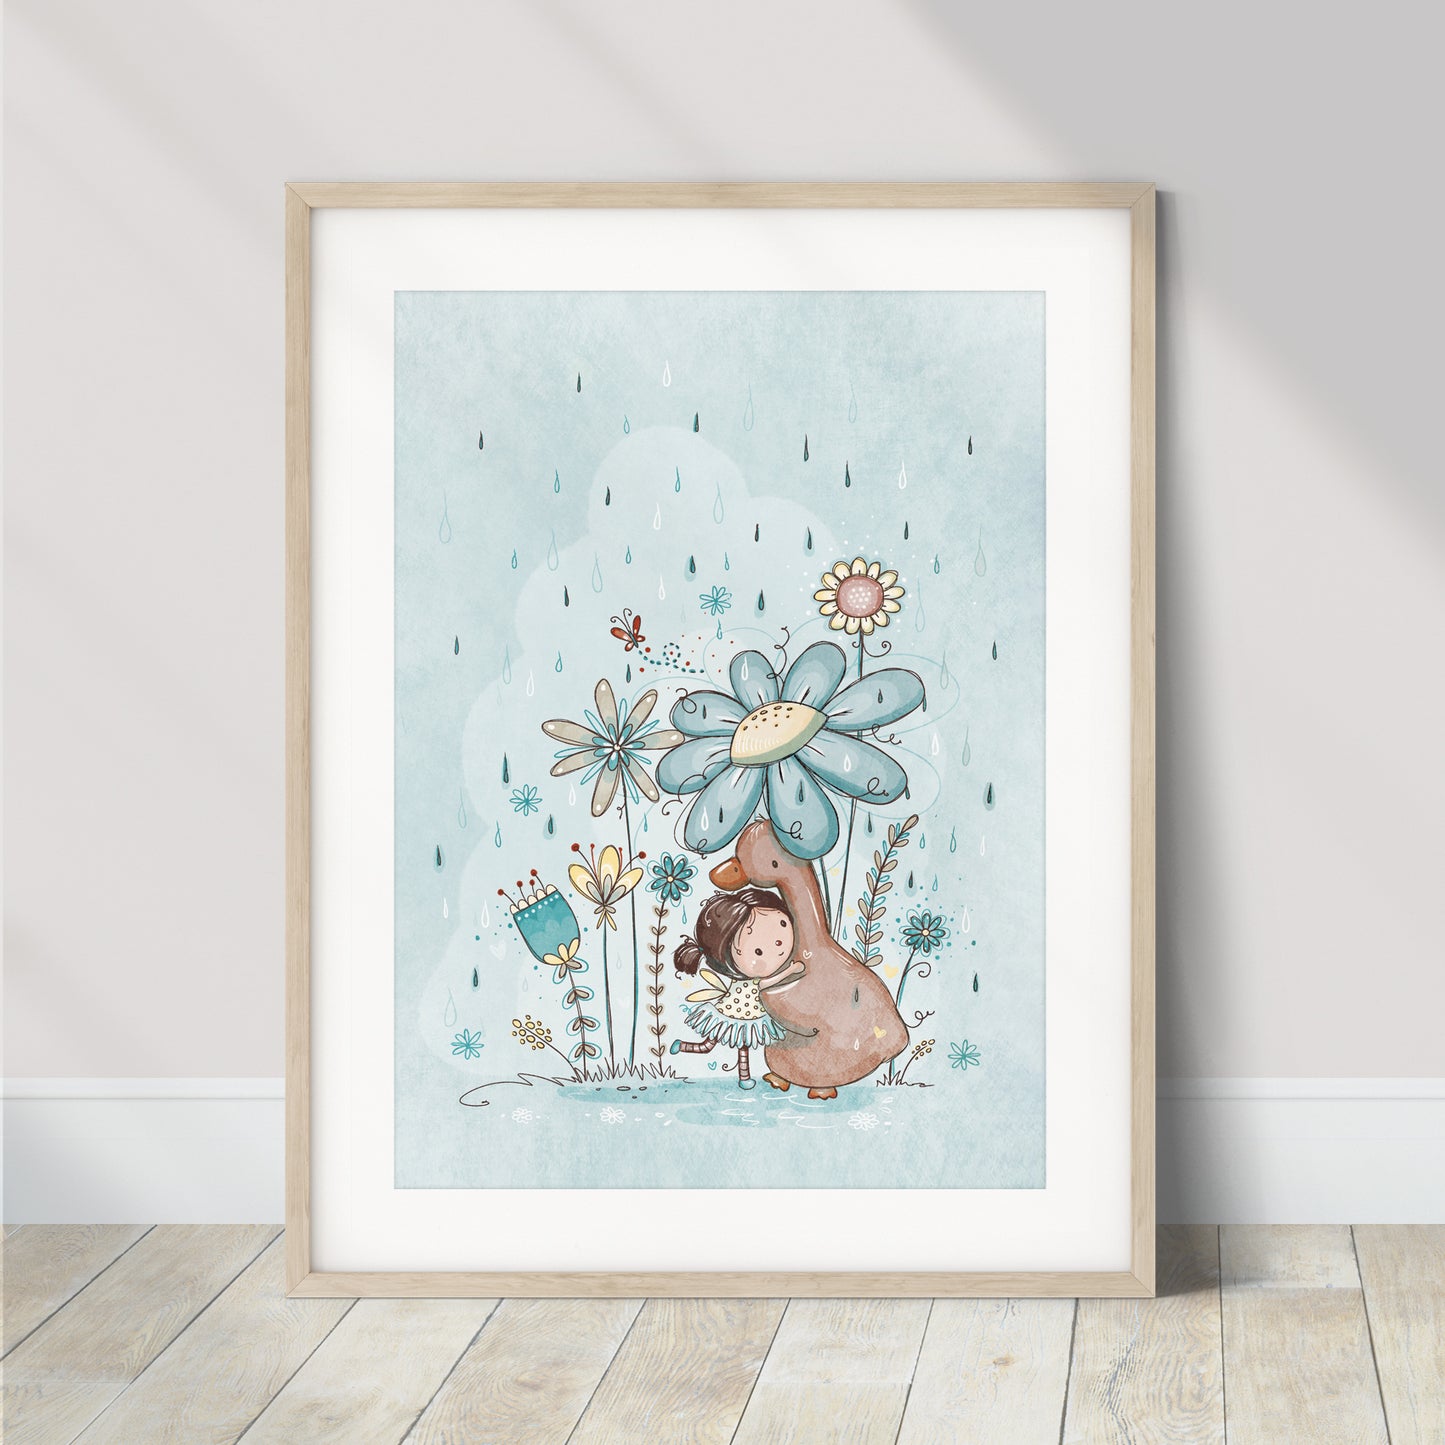 'Summer Rain' Children's Wall Art Print